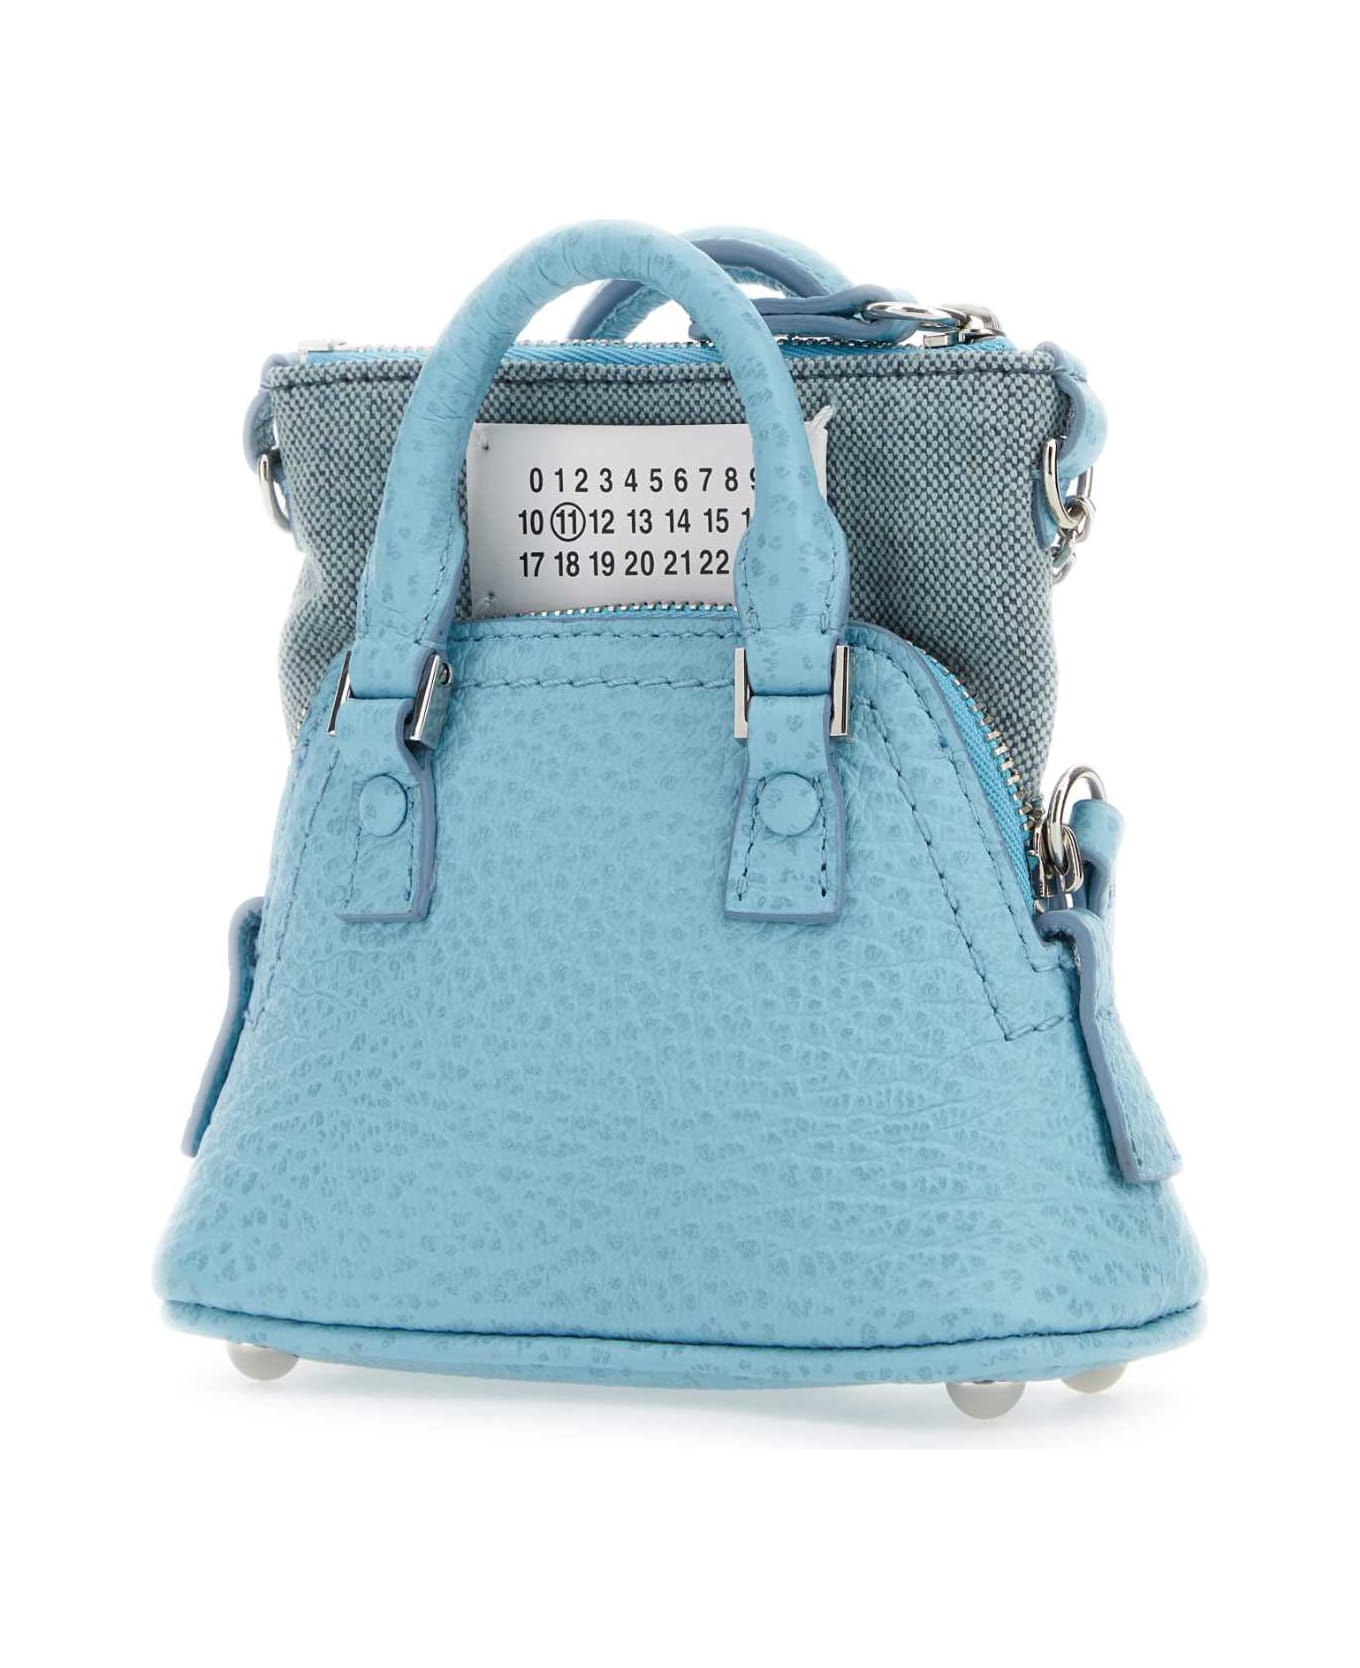 Maison Margiela Light Blue Leather And Fabric 5ac Classique Baby Handbag - AQUA